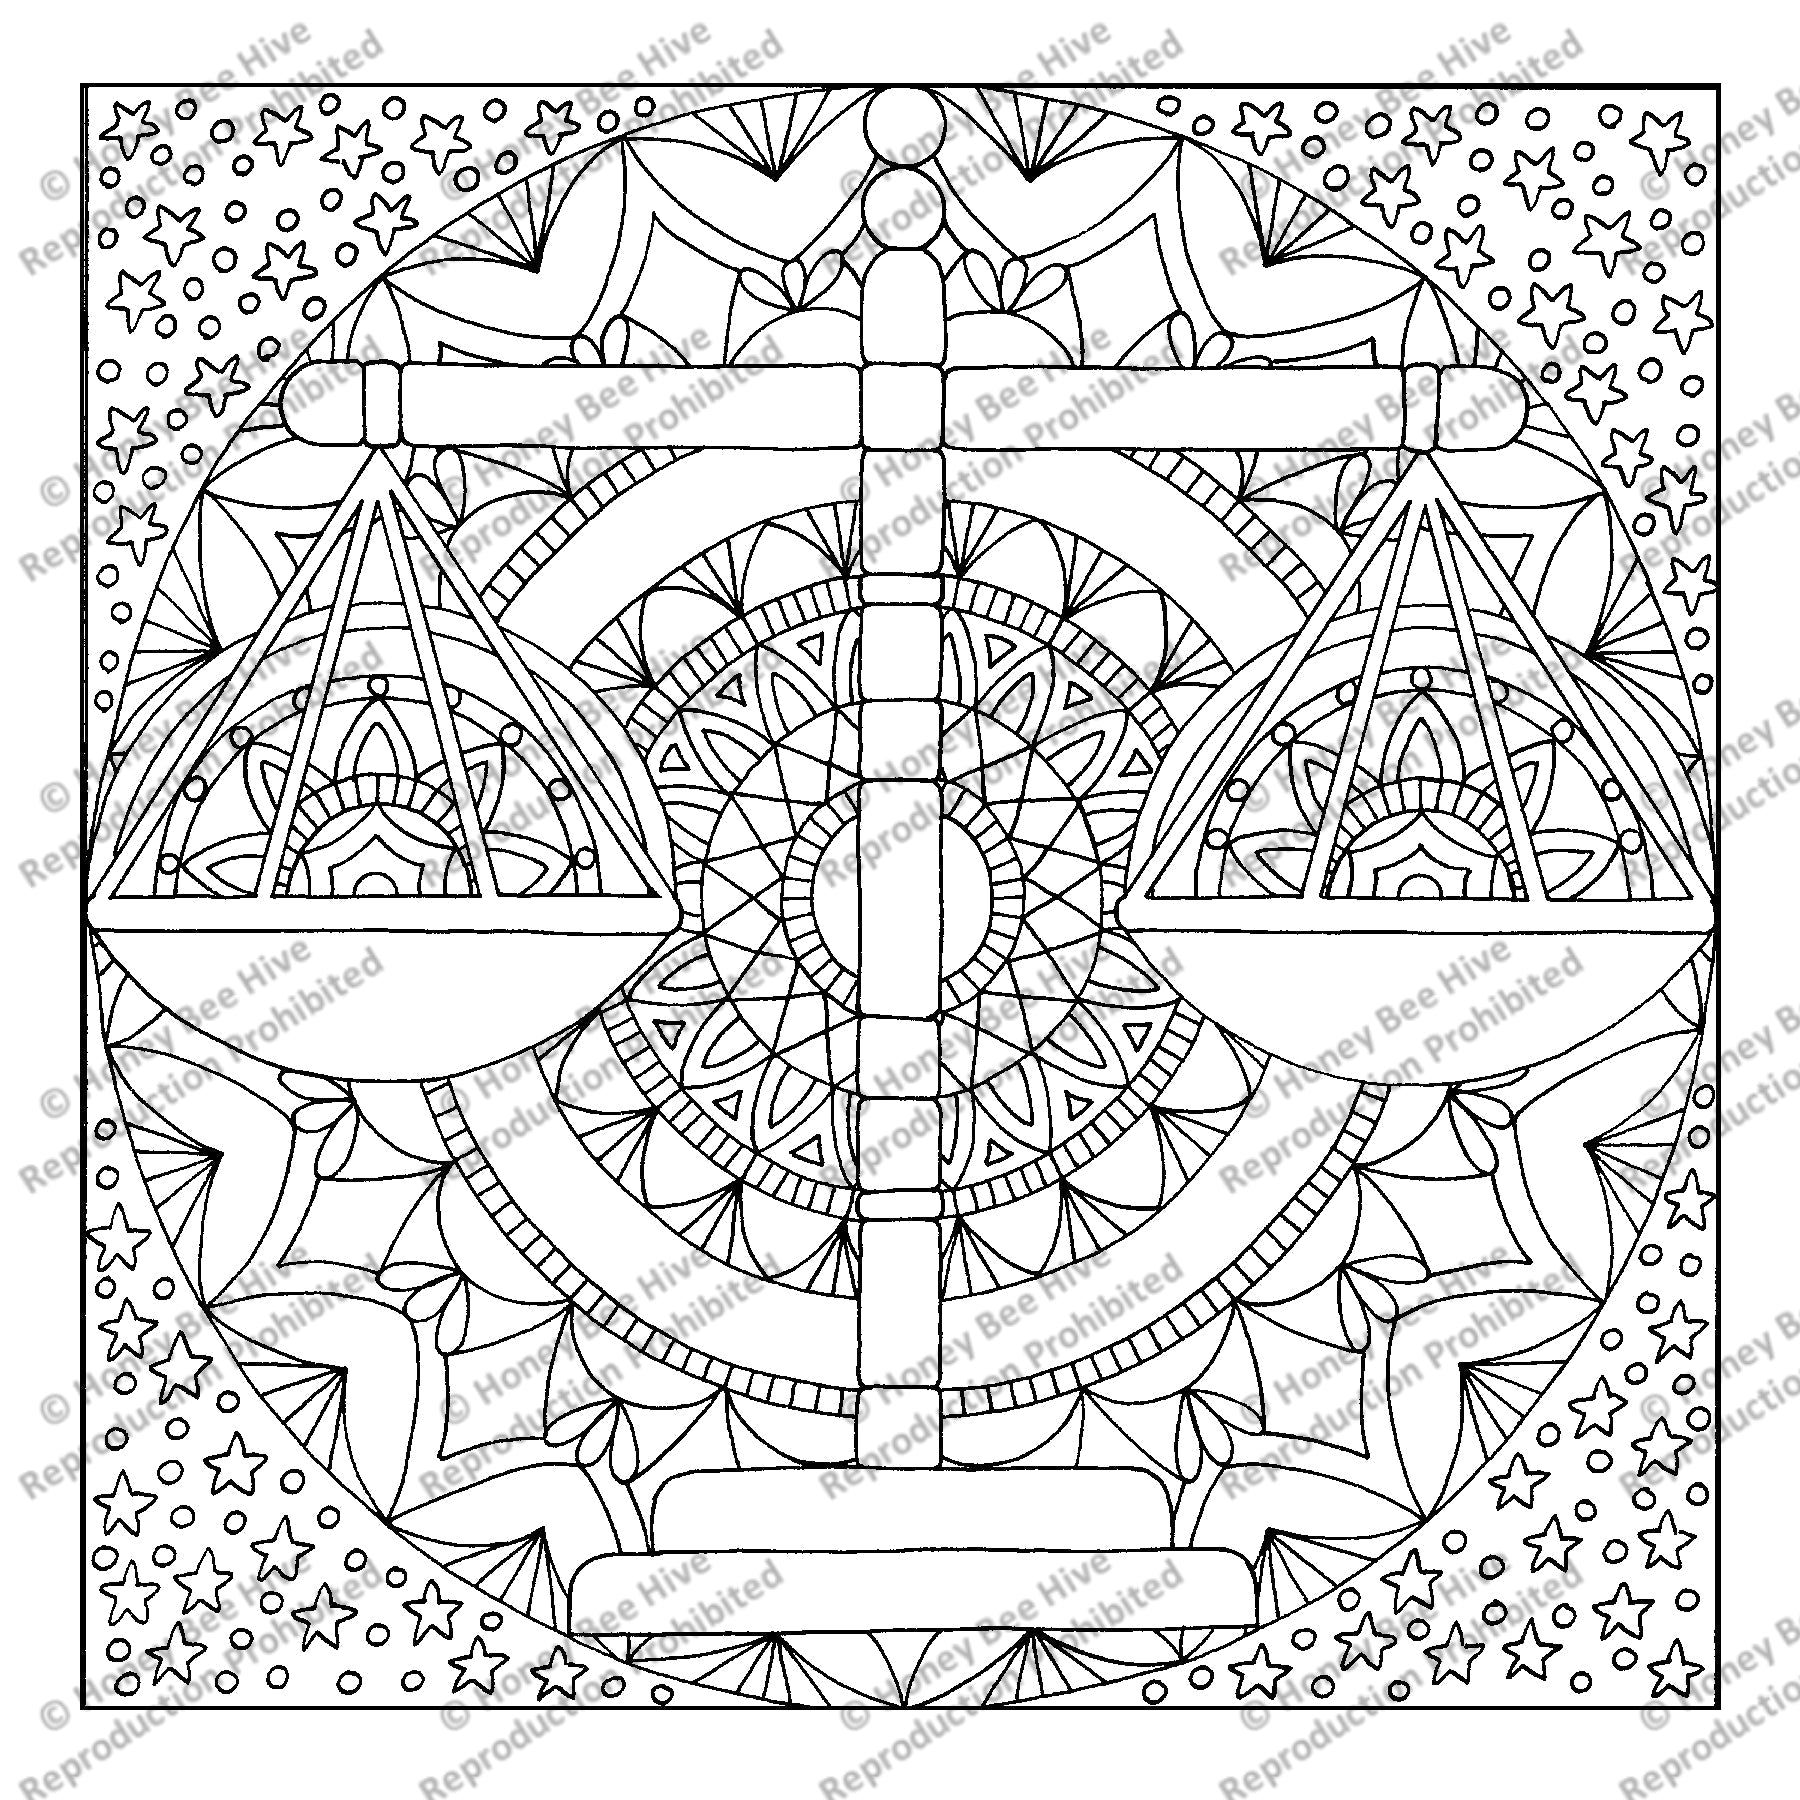 Libra, rug hooking pattern